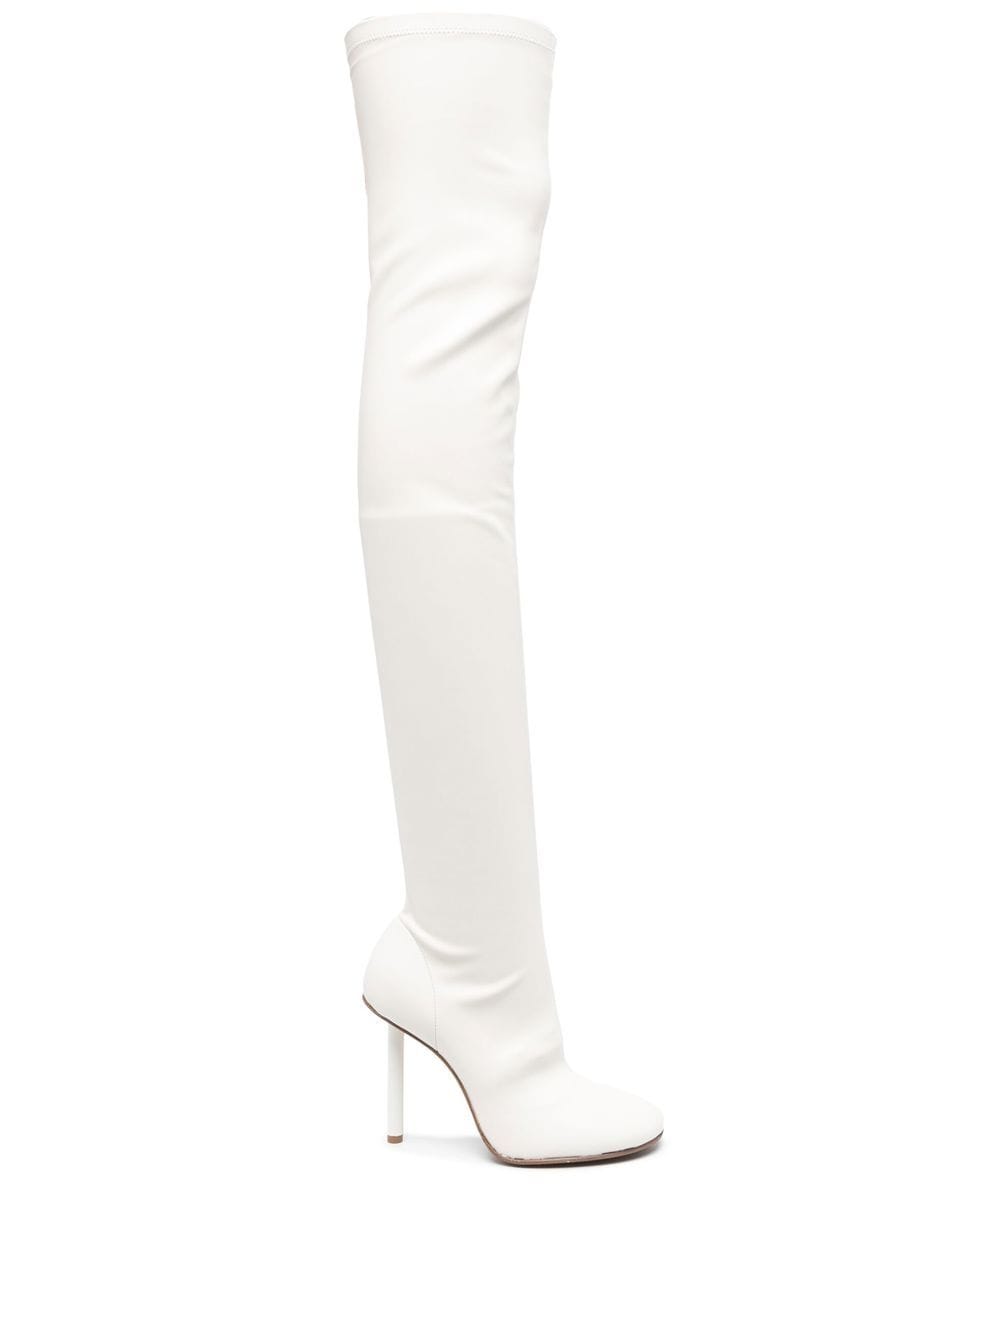 Le Silla Karlie 110mm thigh-high boots - White von Le Silla